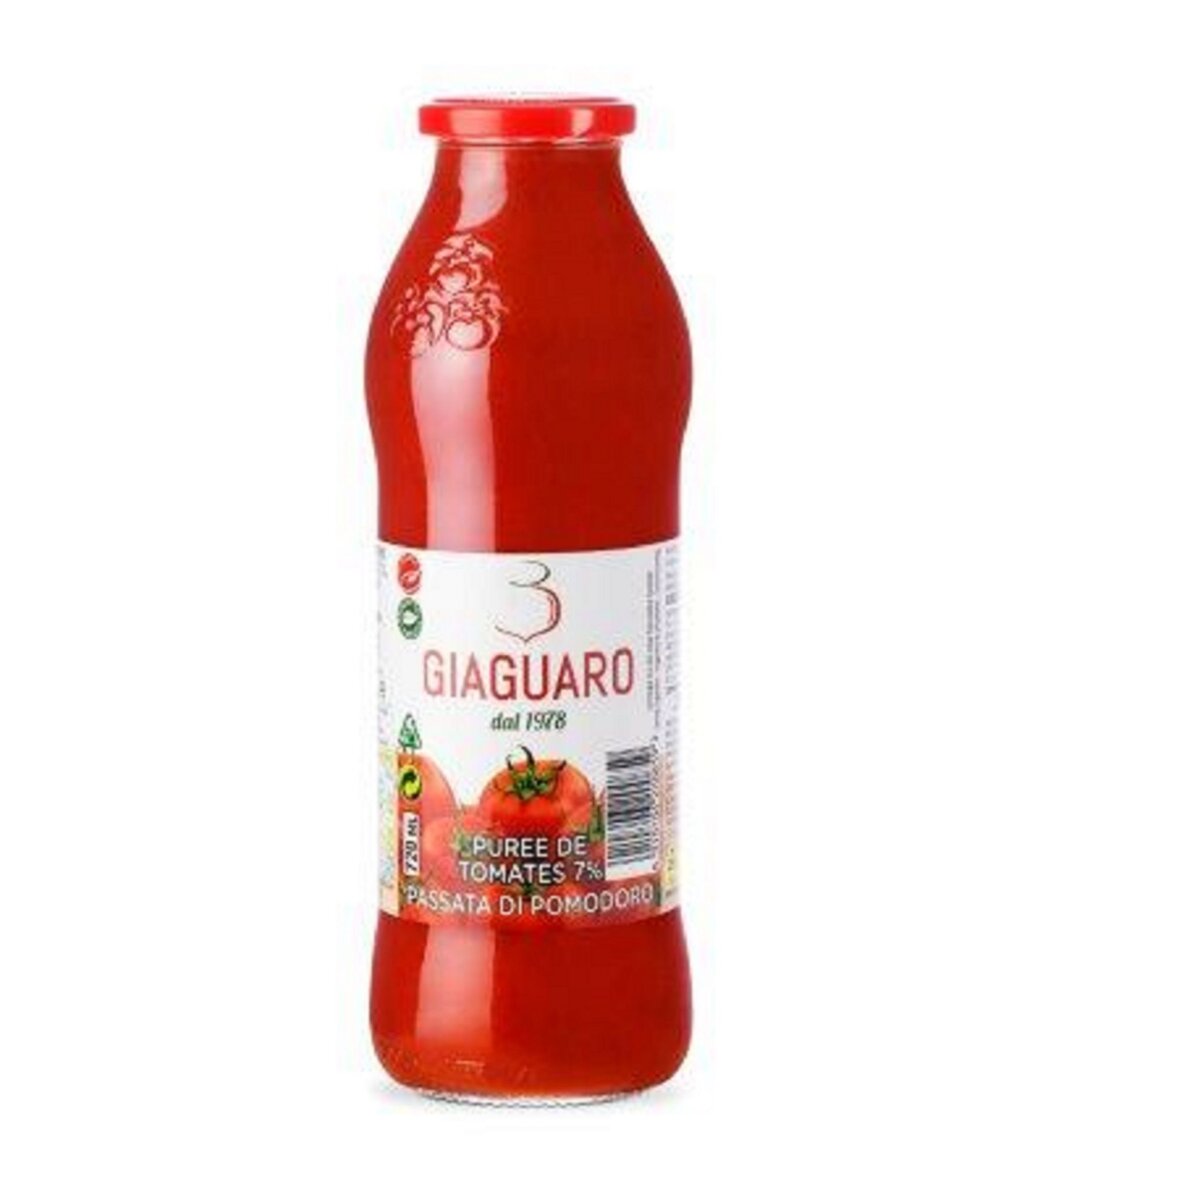 GIAGUARO Purée de tomates en bouteille 680g